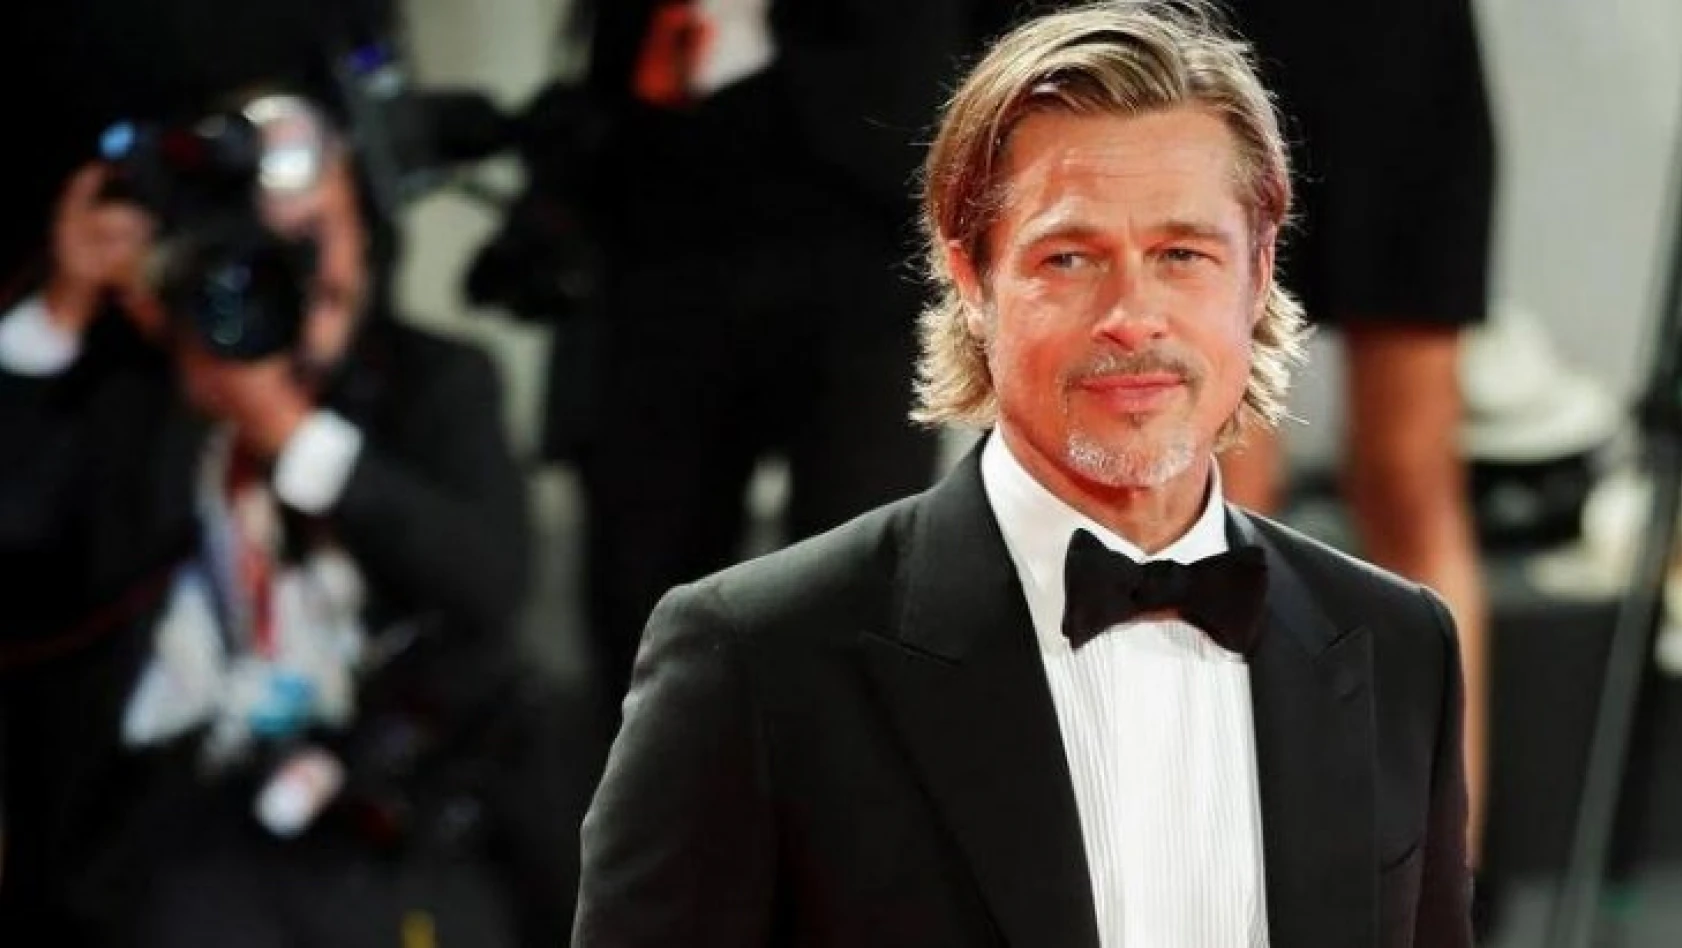 Brad Pitt, Angelina Jolie'den sonra kendini işine adadı